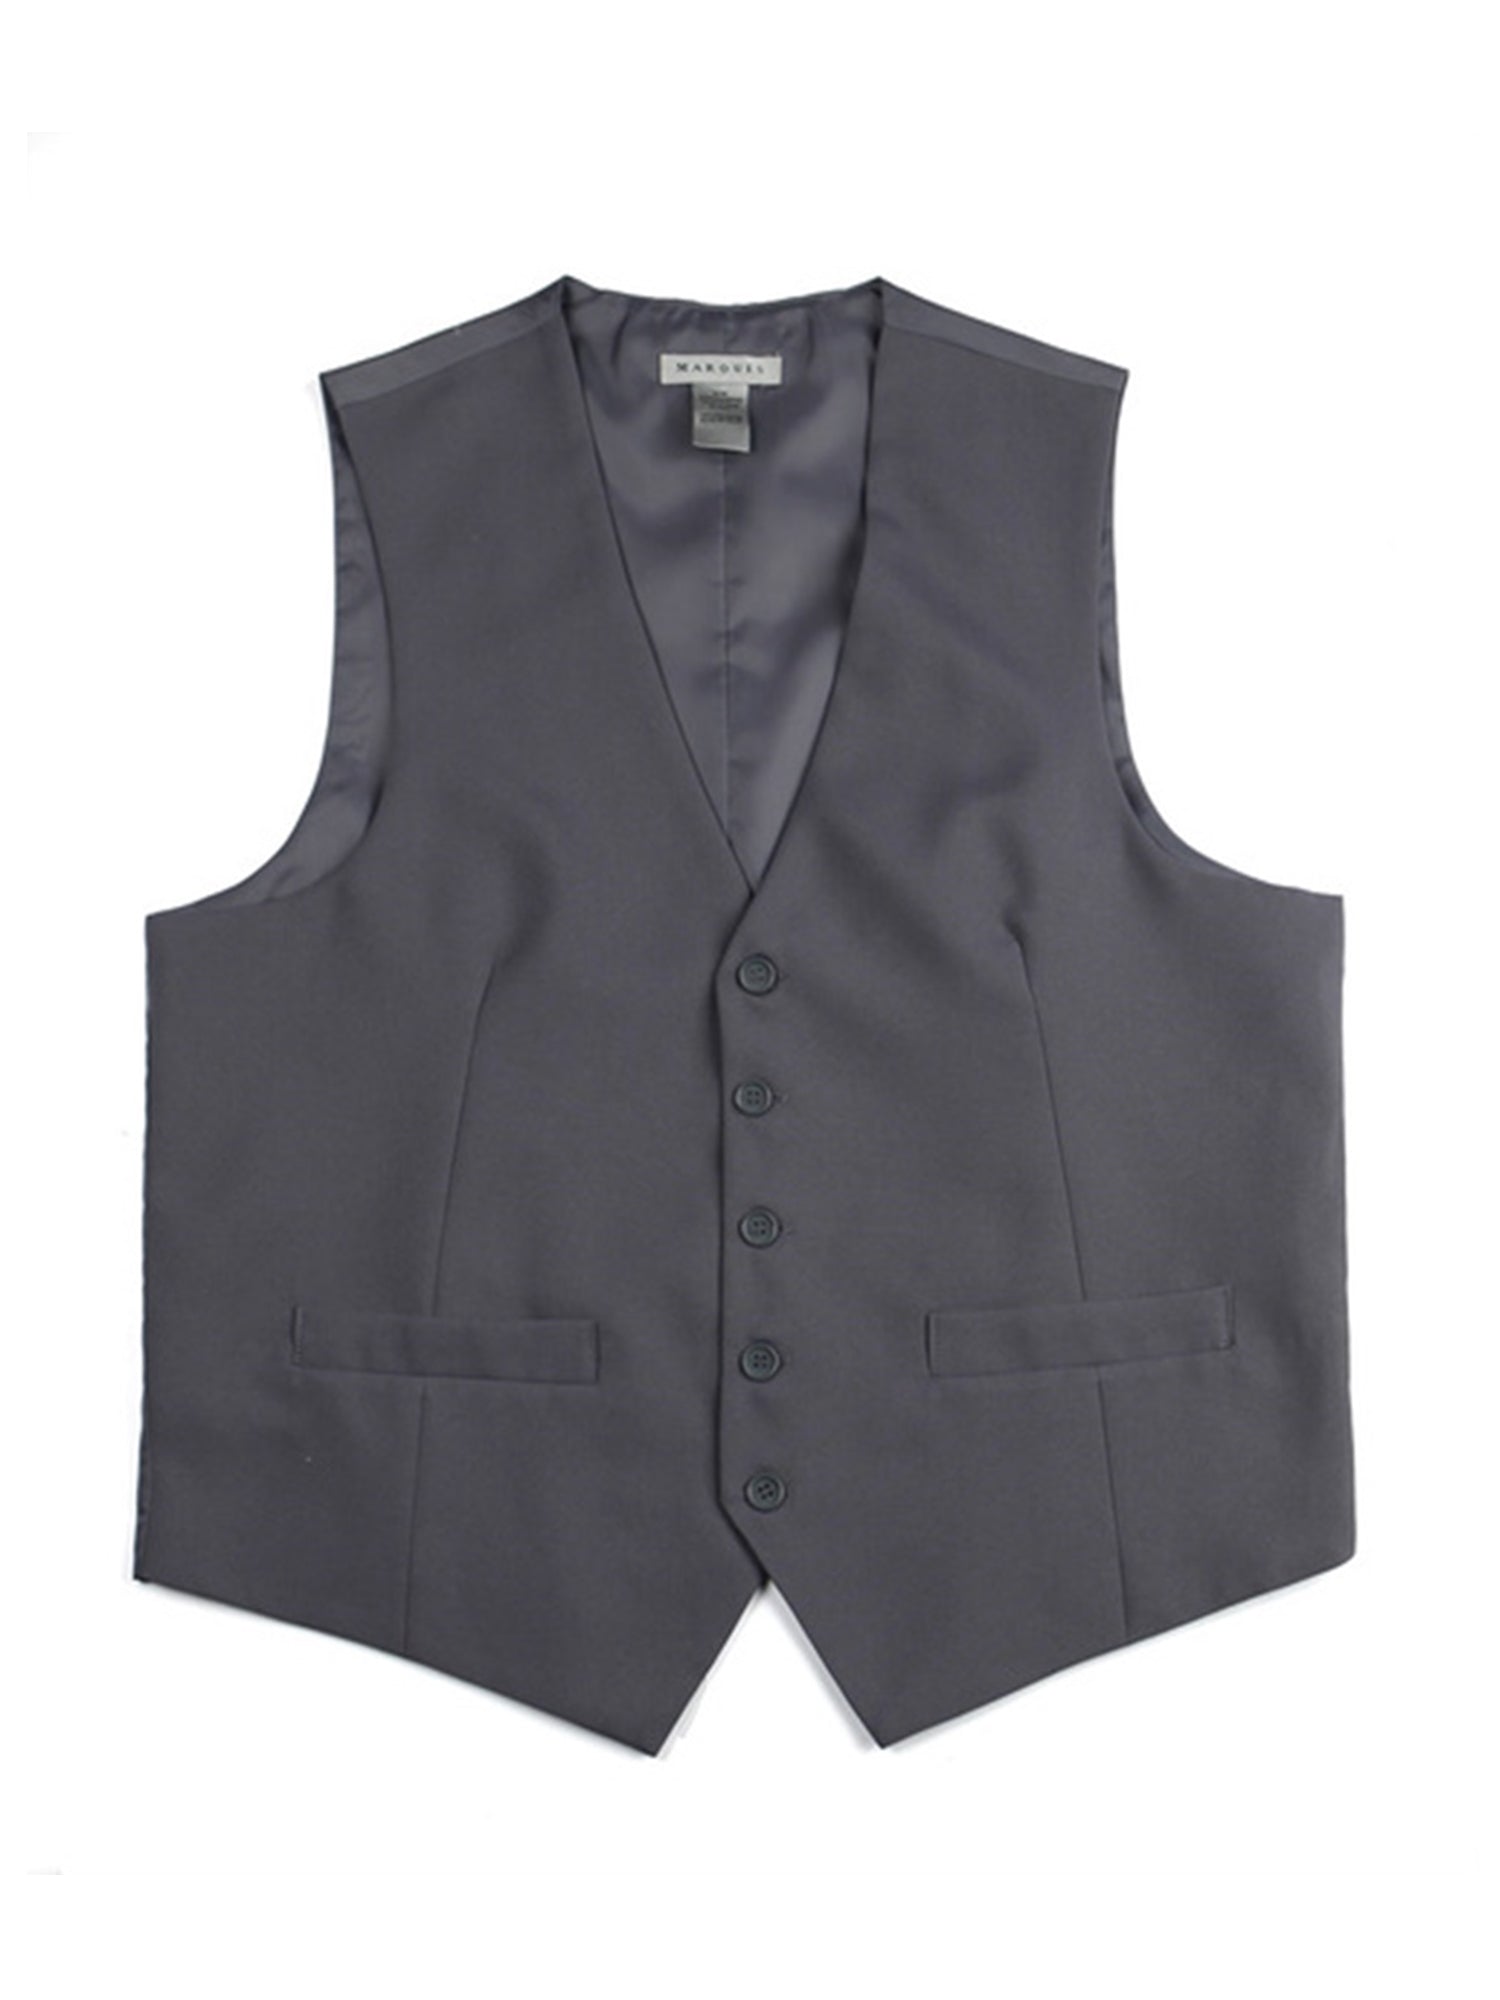 Marquis Men's Streamlined 5 Button Formal Suit Vest Vests Marquis Charcoal XS 